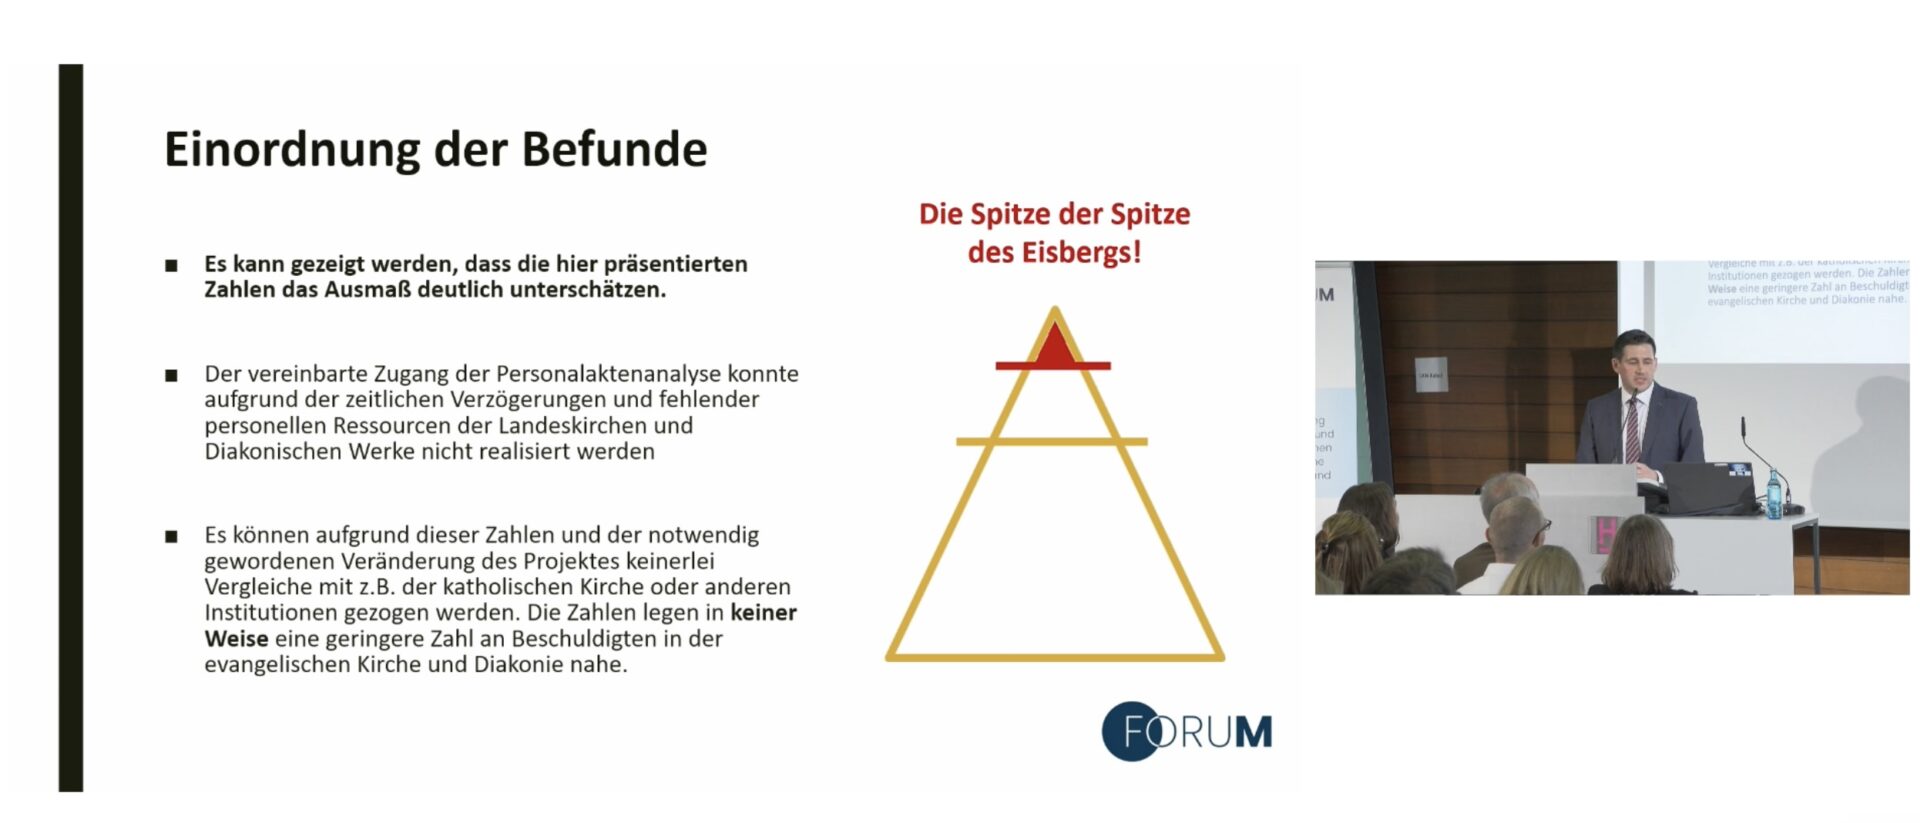 Die Spitze der Spitze des Eisbergs: Vorstellung der Missbrauchsstudie der evangelischen Kirche in Deutschland.